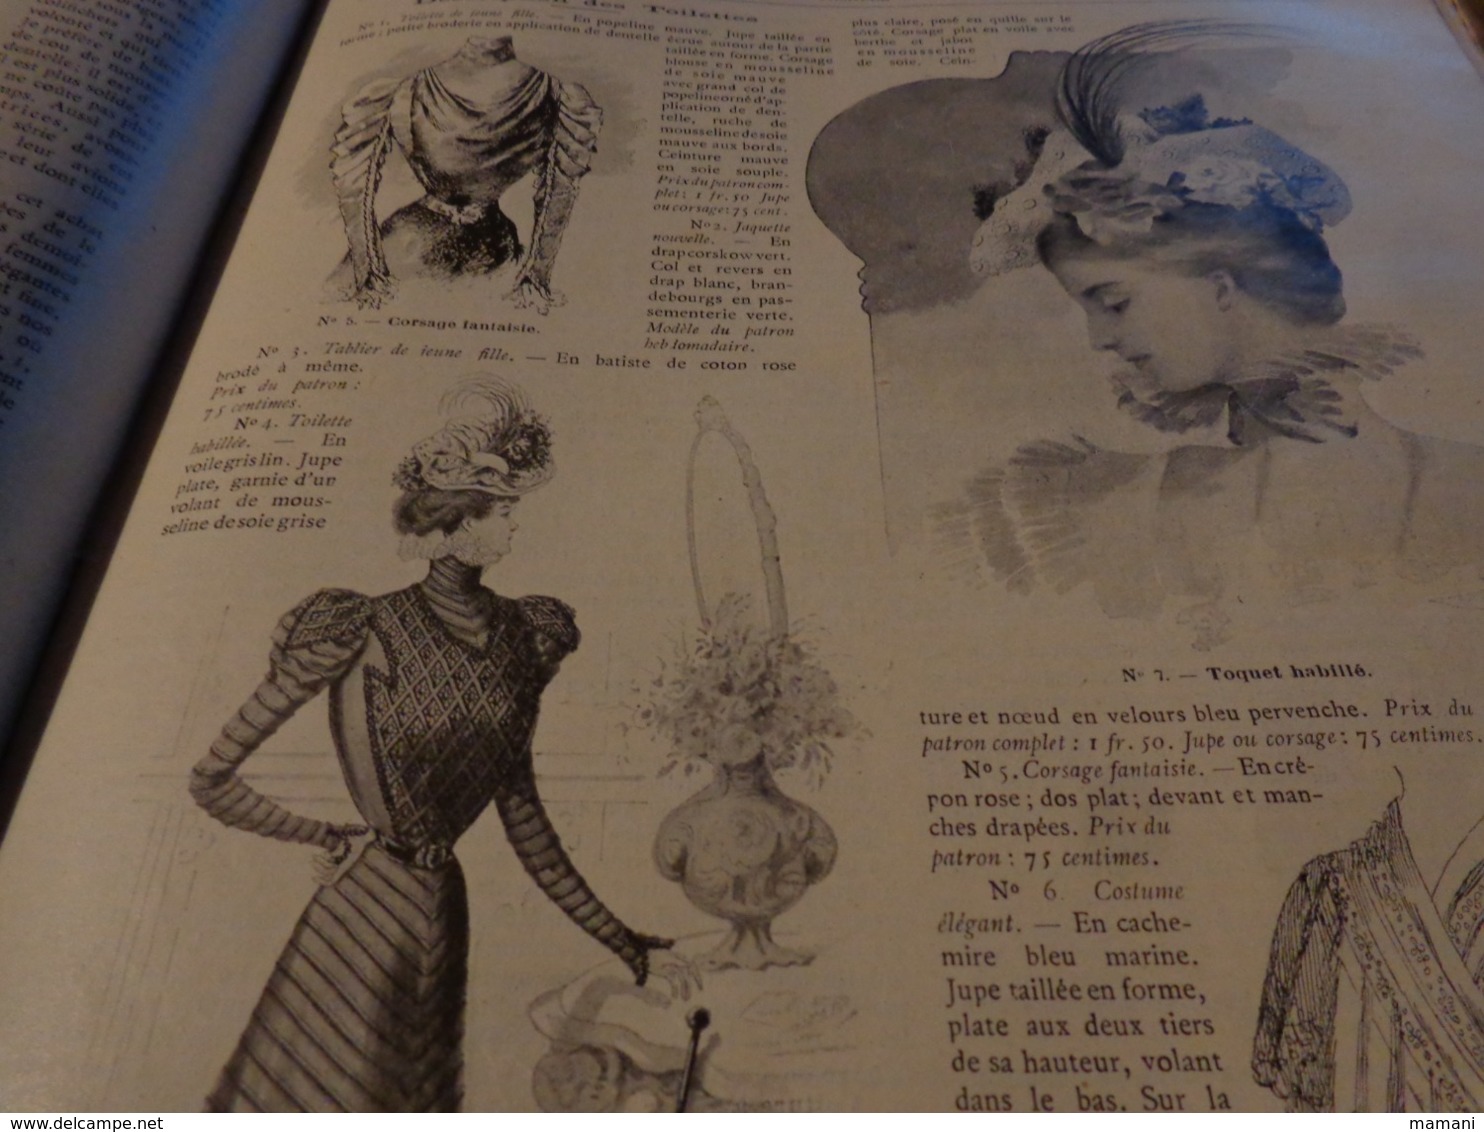 LA FAMILLE 1898 la mode illustree - belle toilette-chapeau etc...benjamin rabier